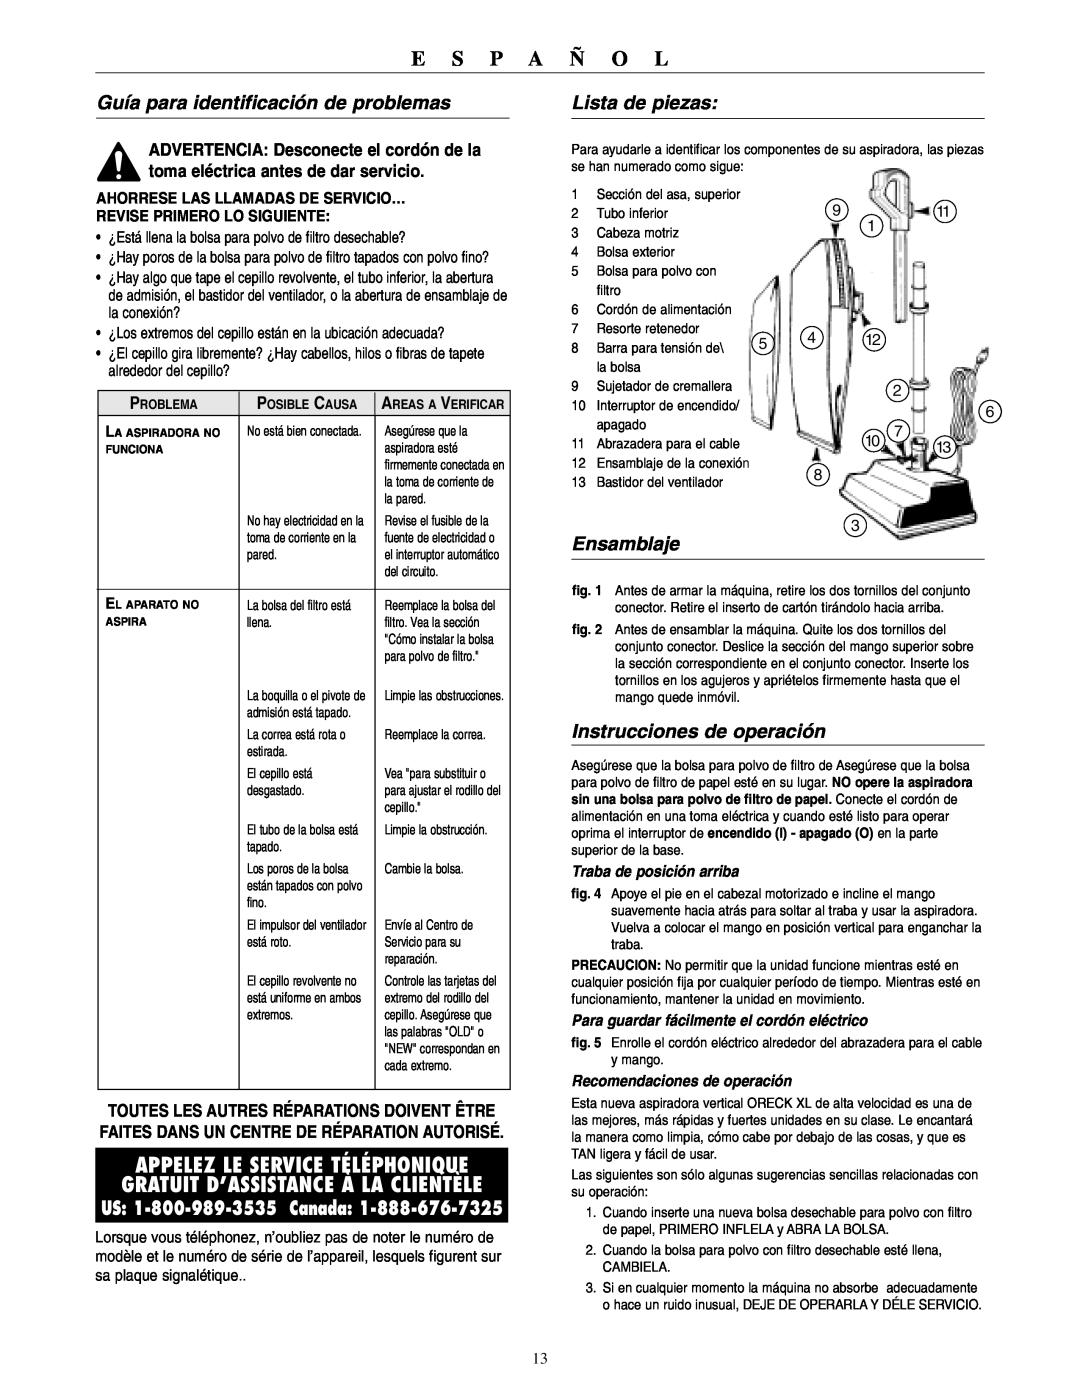 Oreck 2310RD Guía para identificación de problemas, Lista de piezas, Ensamblaje, Instrucciones de operación, E S P A Ñ O L 